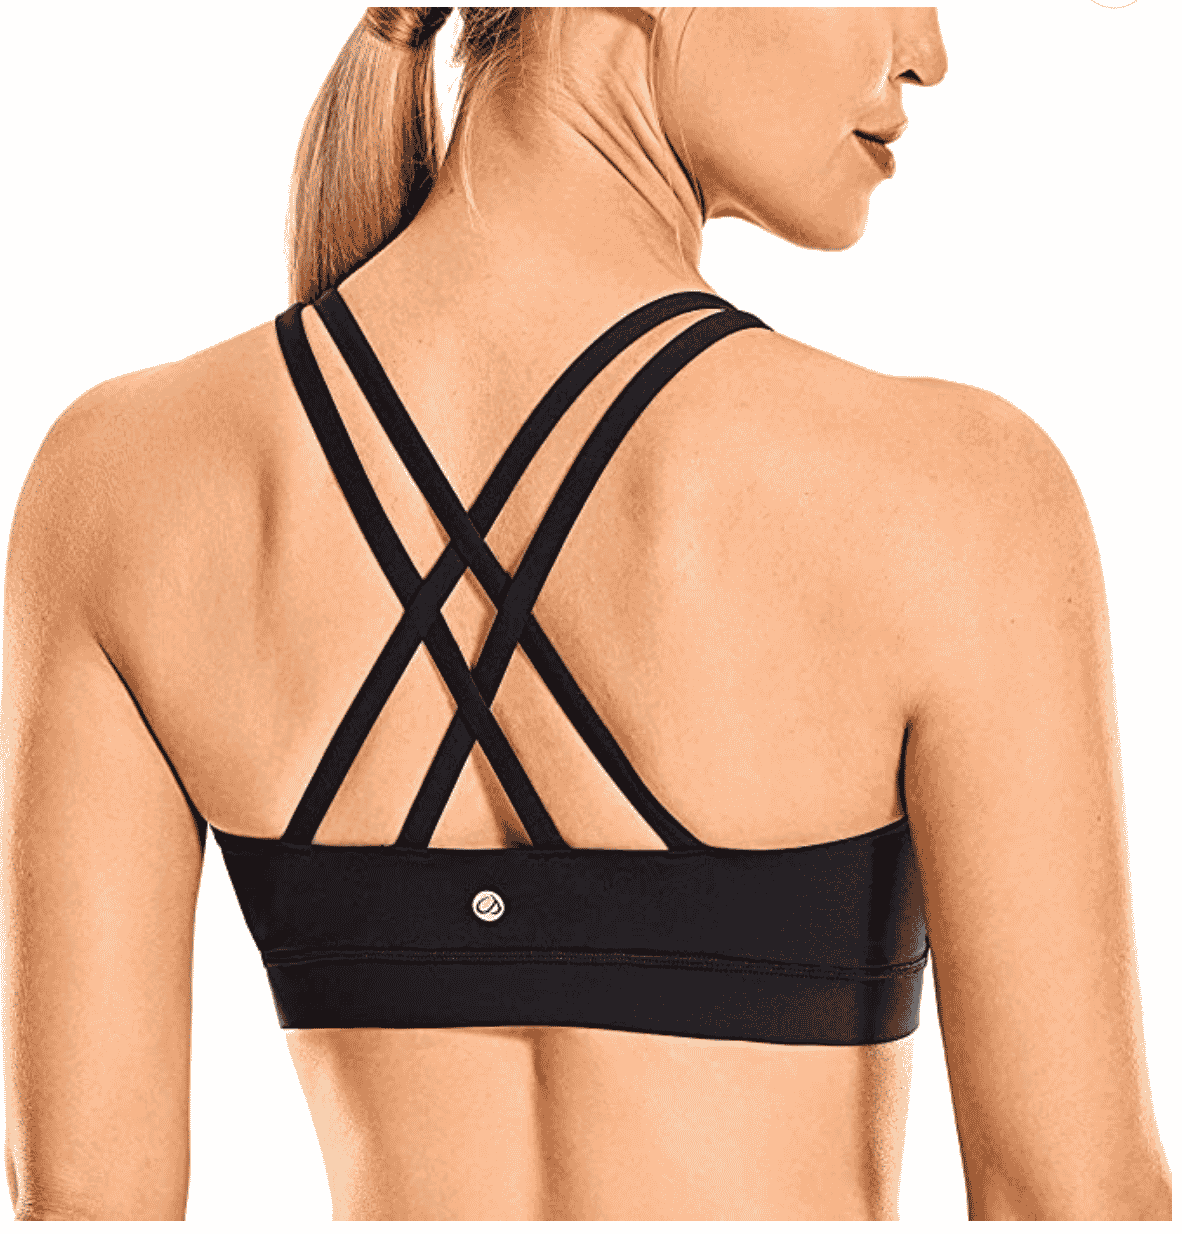 Woman wearing a strappy black sports bra.